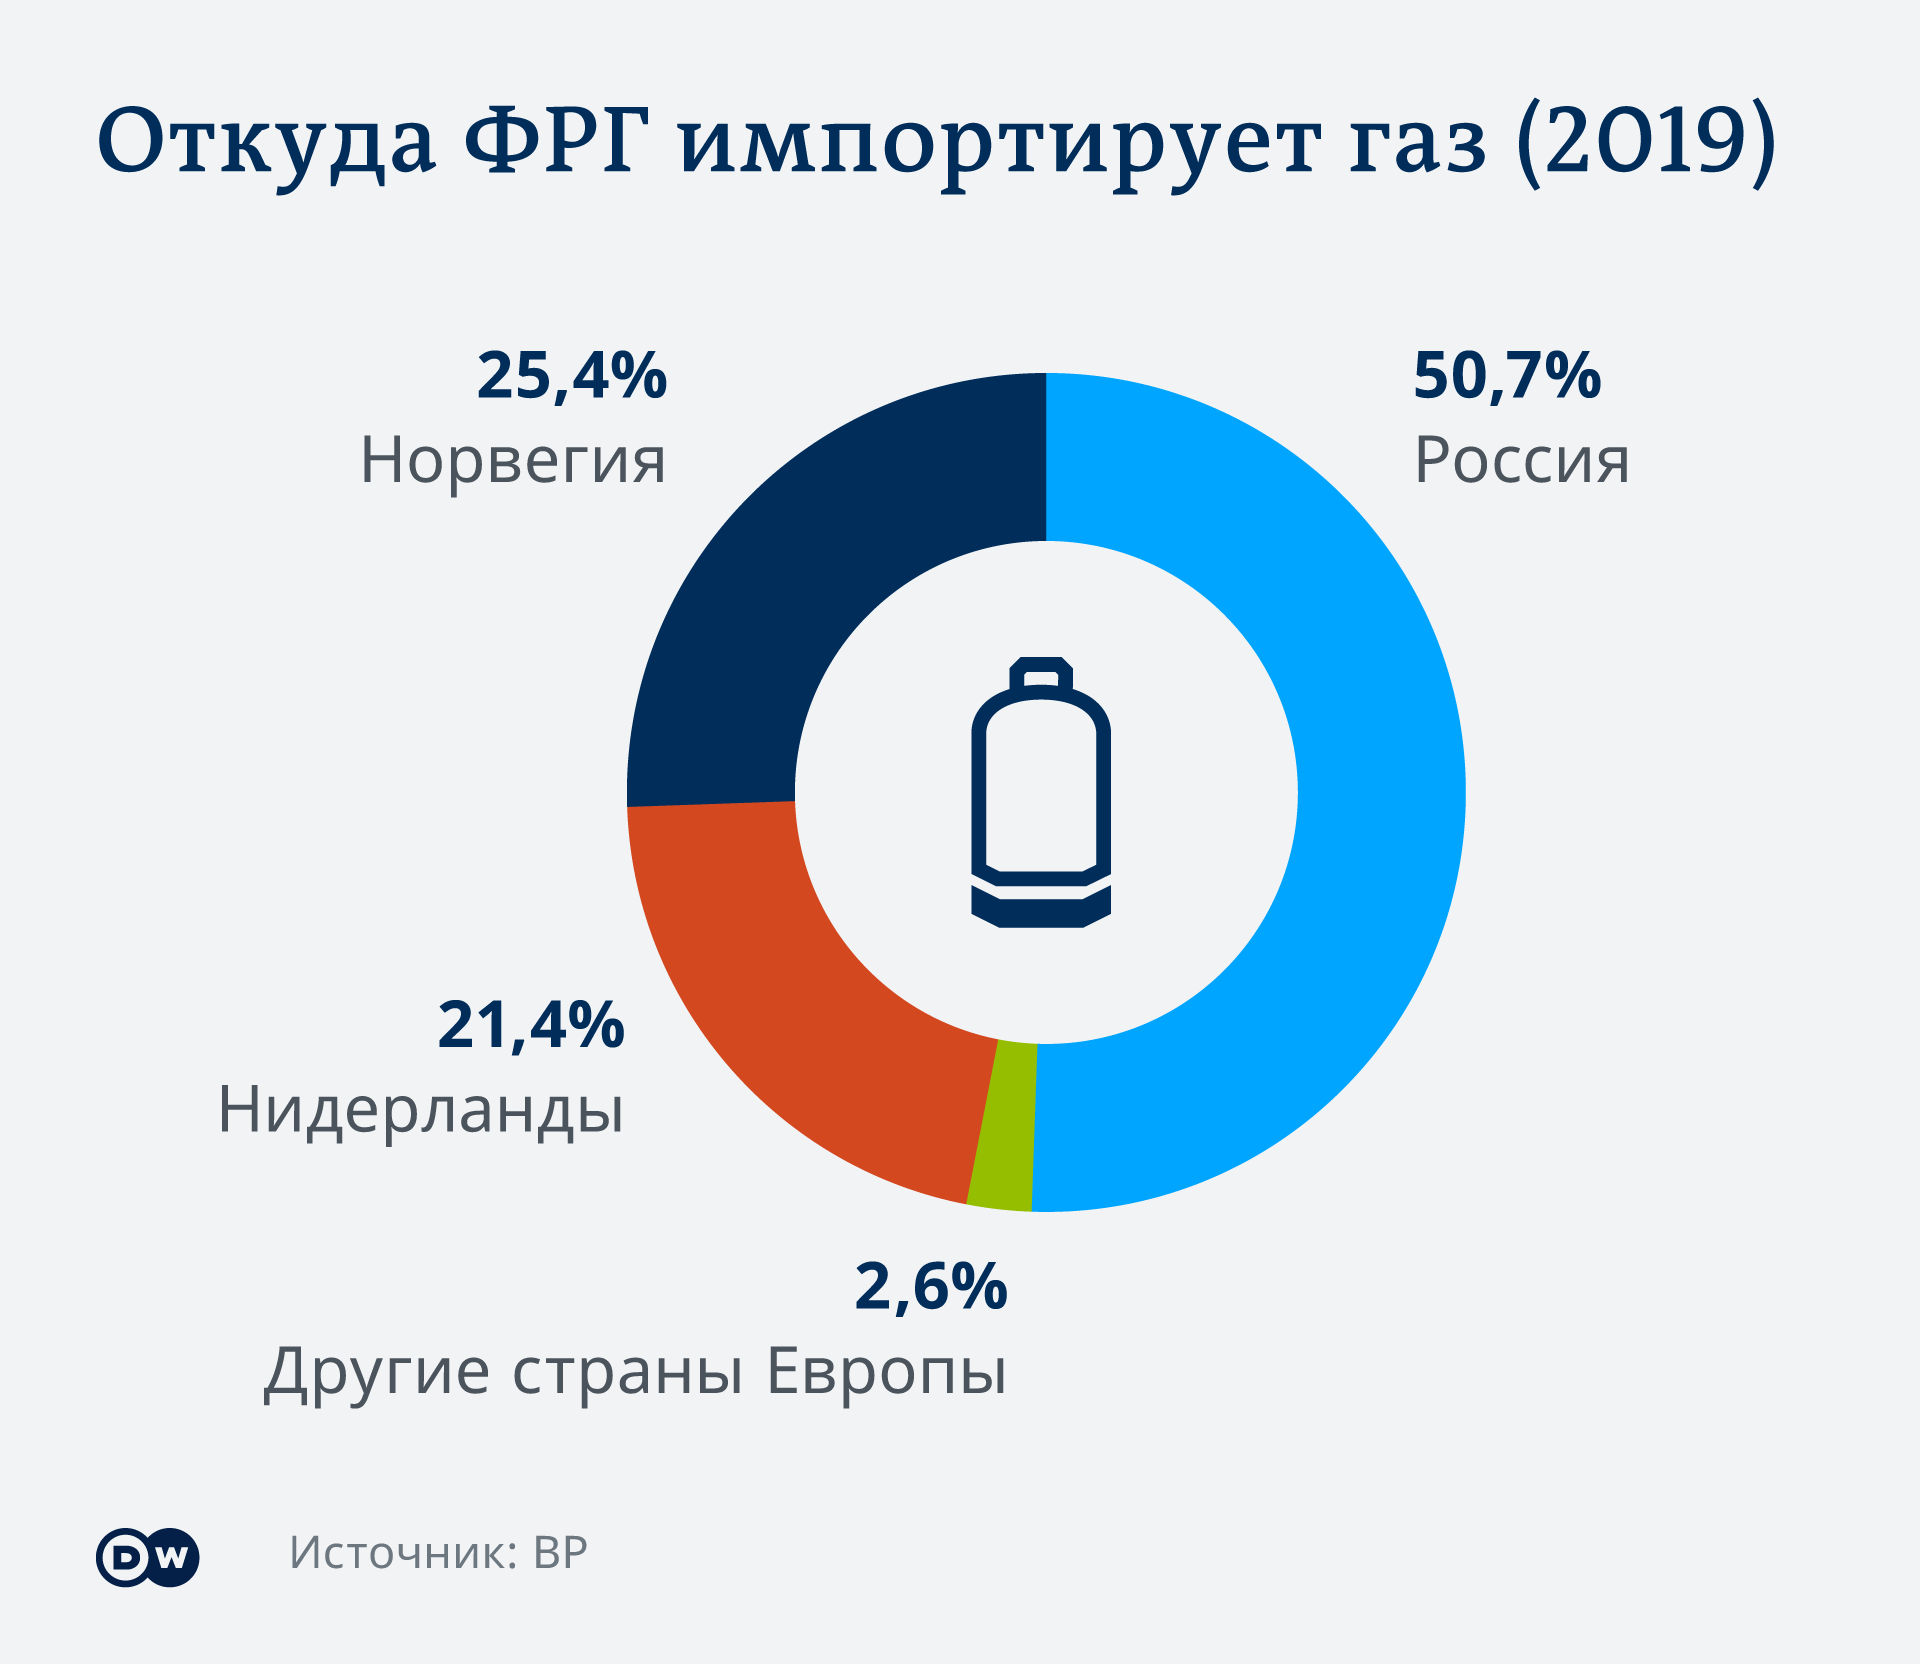 Инфографика Откуда ФРГ импортирует газ (2019)